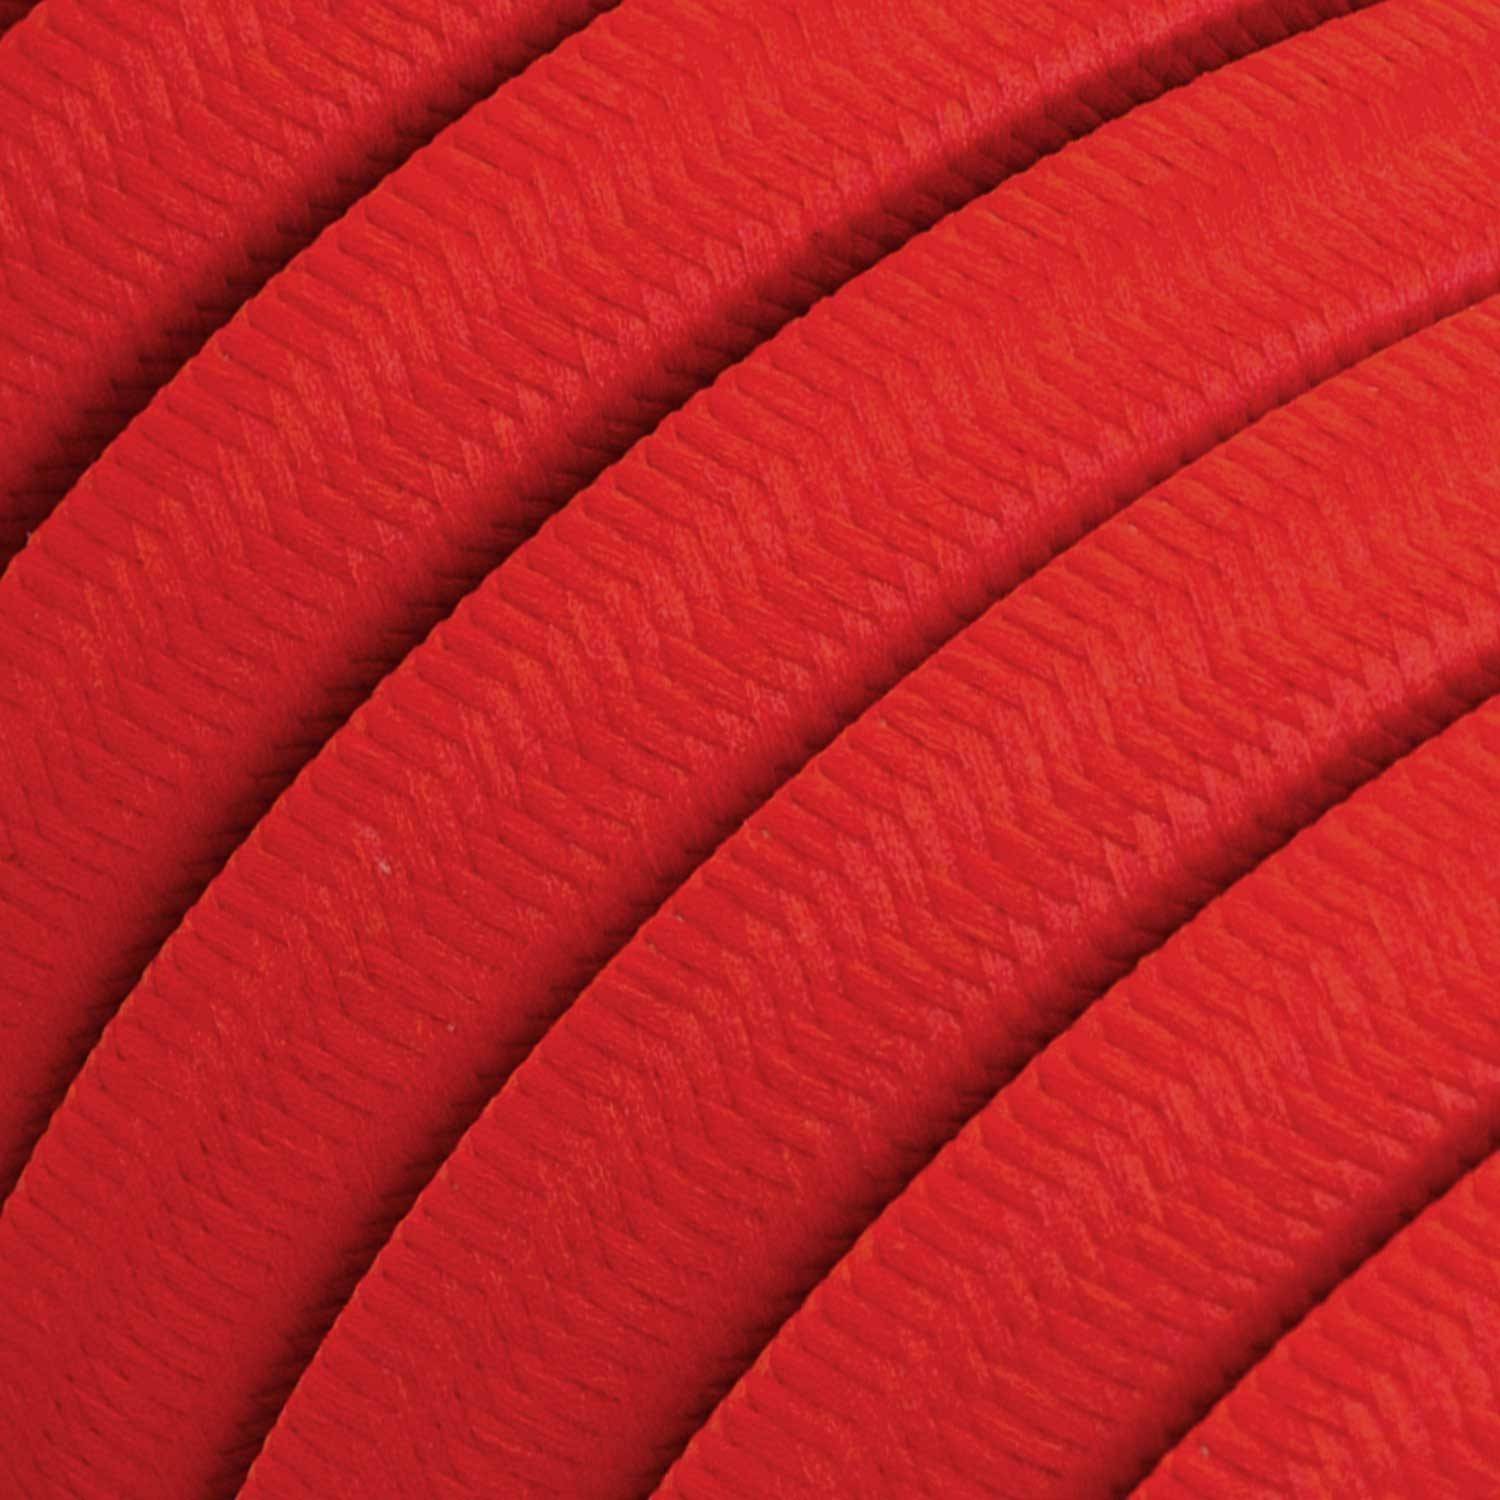 Elektrokabel für Lichterketten mit Textilummantelung in rot CM09, UV-beständig